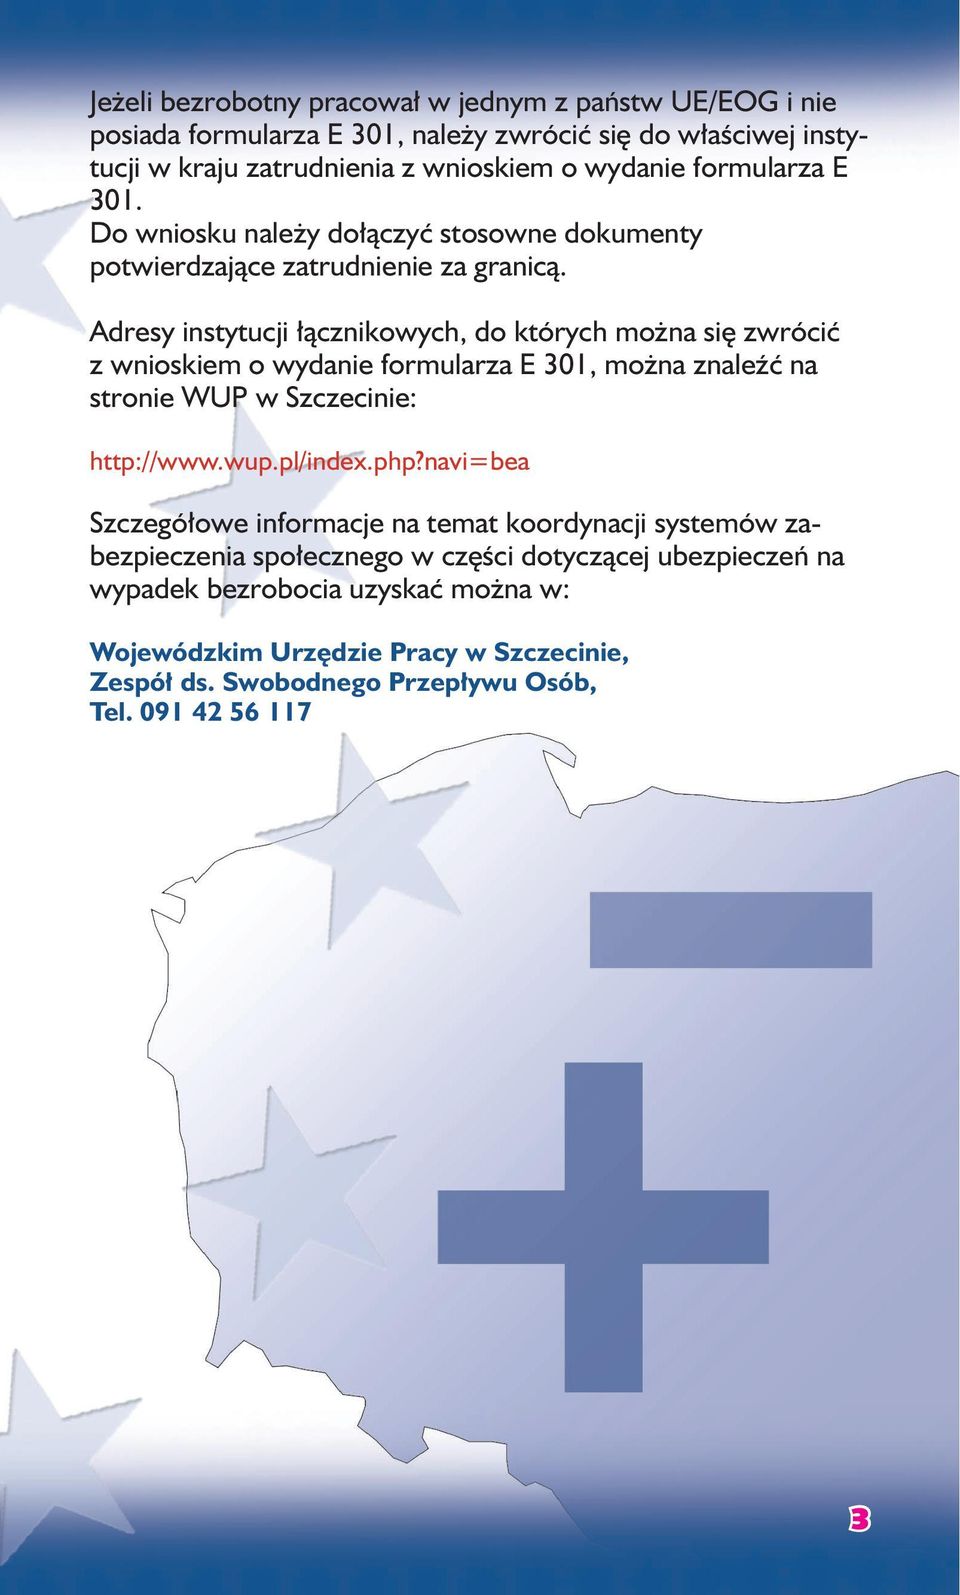 Adresy instytucji łącznikowych, do których można się zwrócić z wnioskiem o wydanie formularza E 301, można znaleźć na stronie WUP w Szczecinie: http://www.wup.pl/index.php?